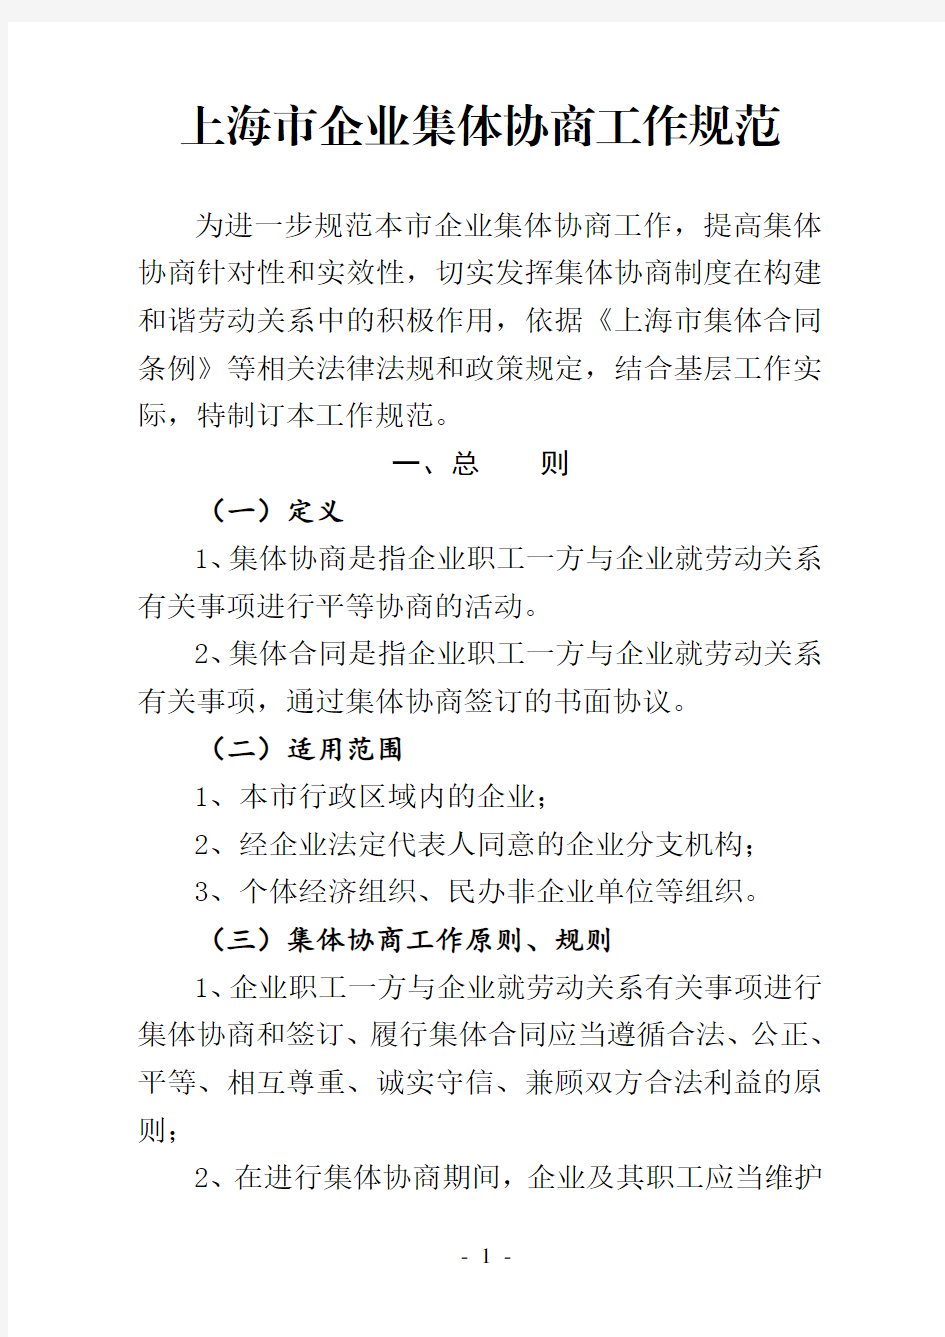 上海市企业集体协商工作规范